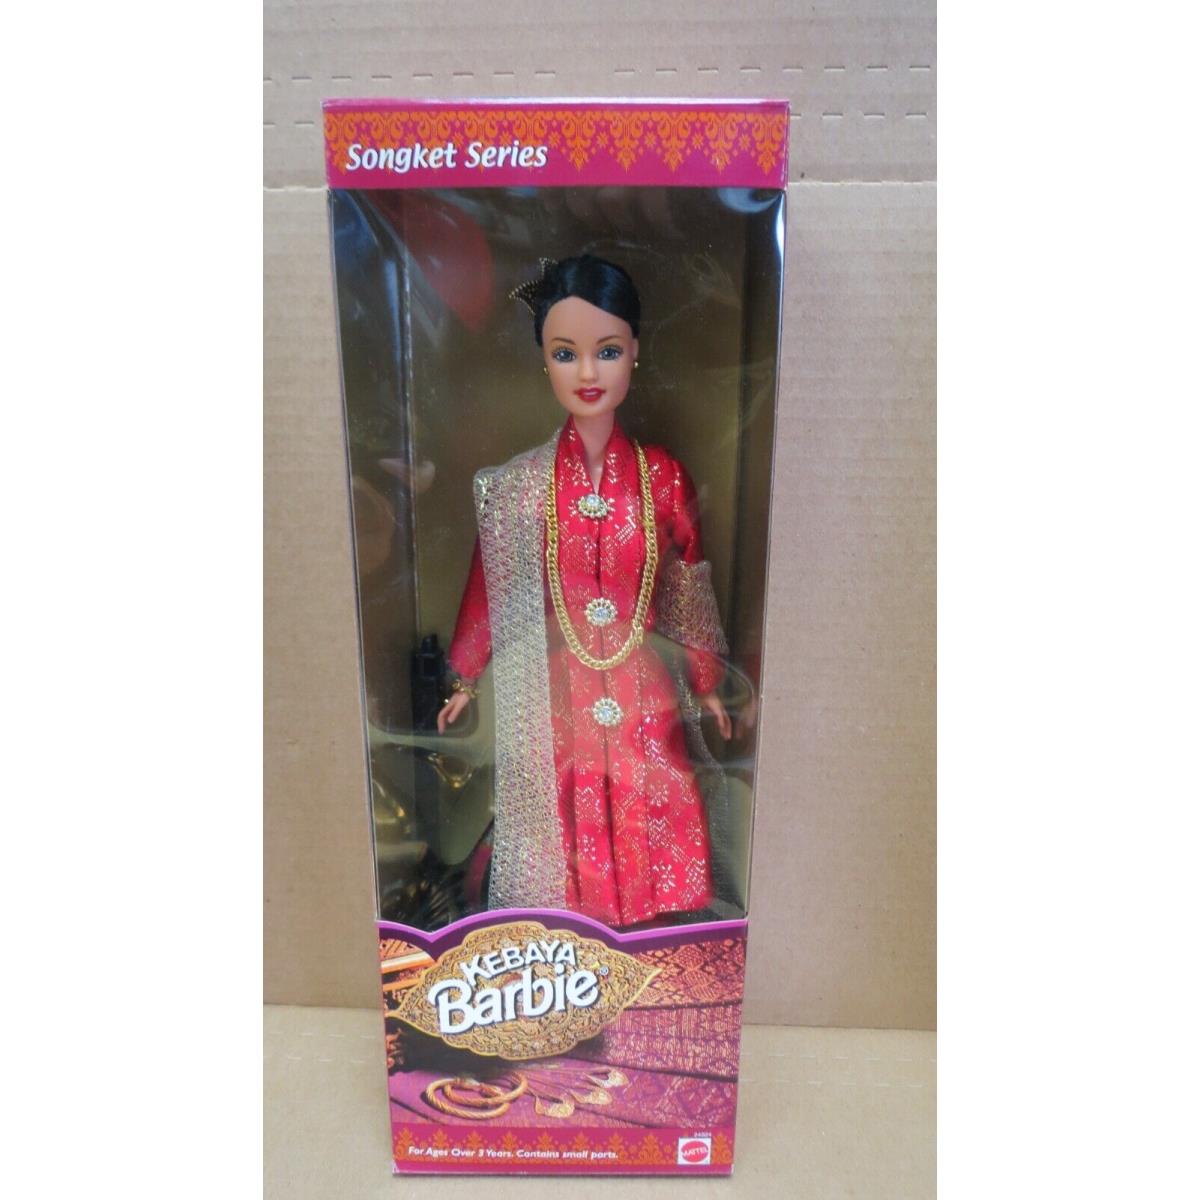 Mattel 24924 Songket Series Kebaya Barbie with Red Dress